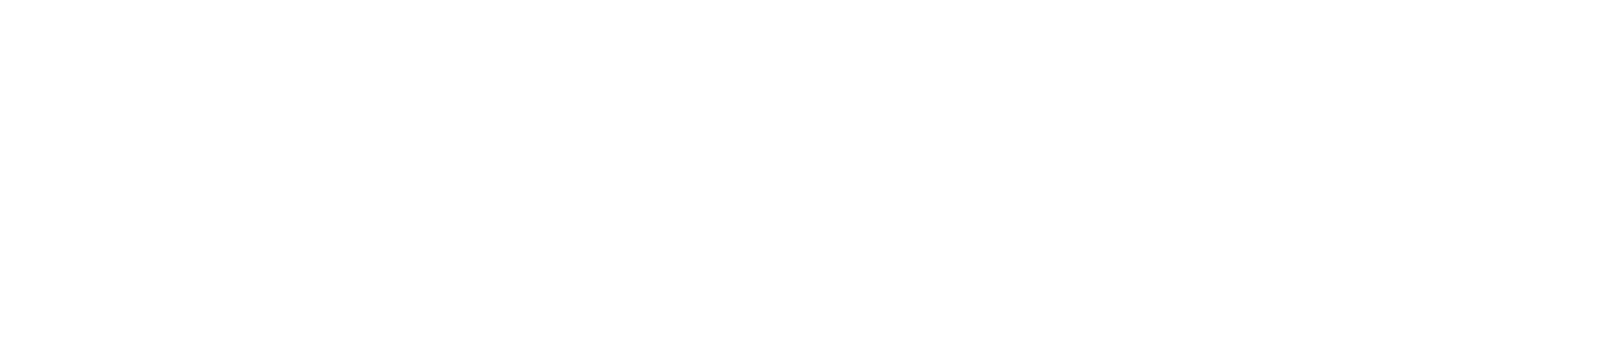 Vanda Pharmaceuticals logo large for dark backgrounds (transparent PNG)